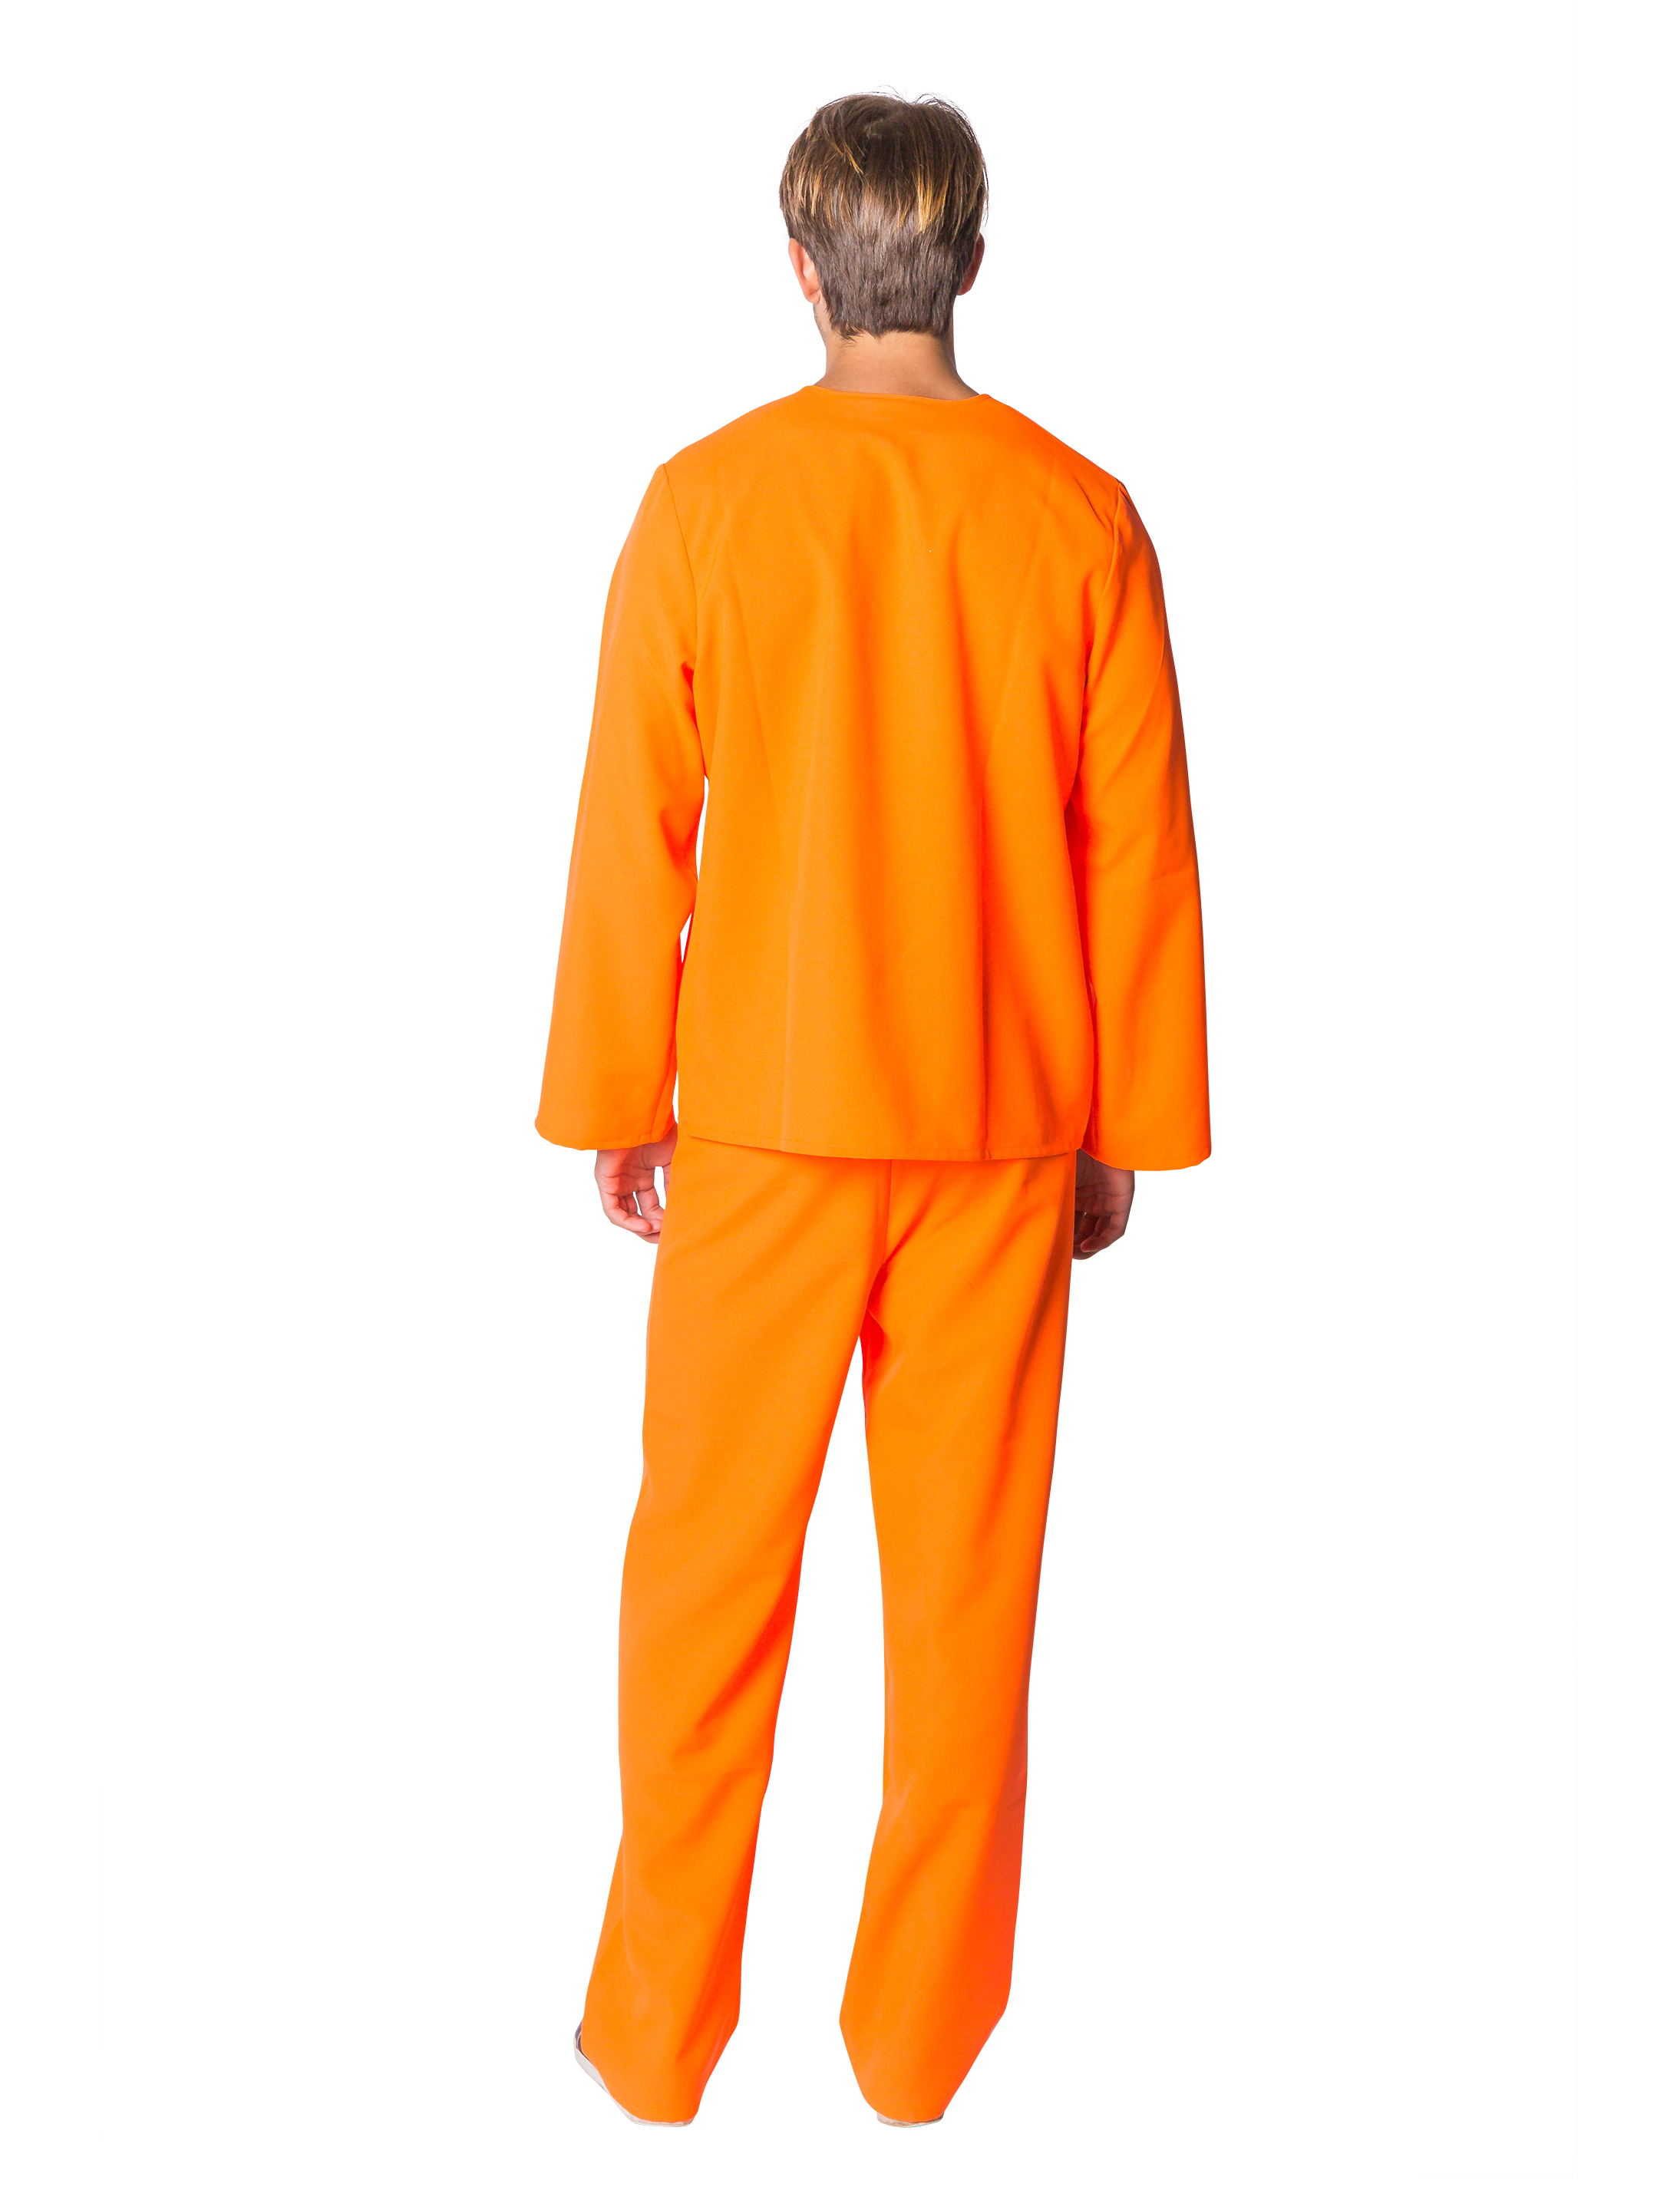 Gefangener USA 2-tlg. orange 58-60